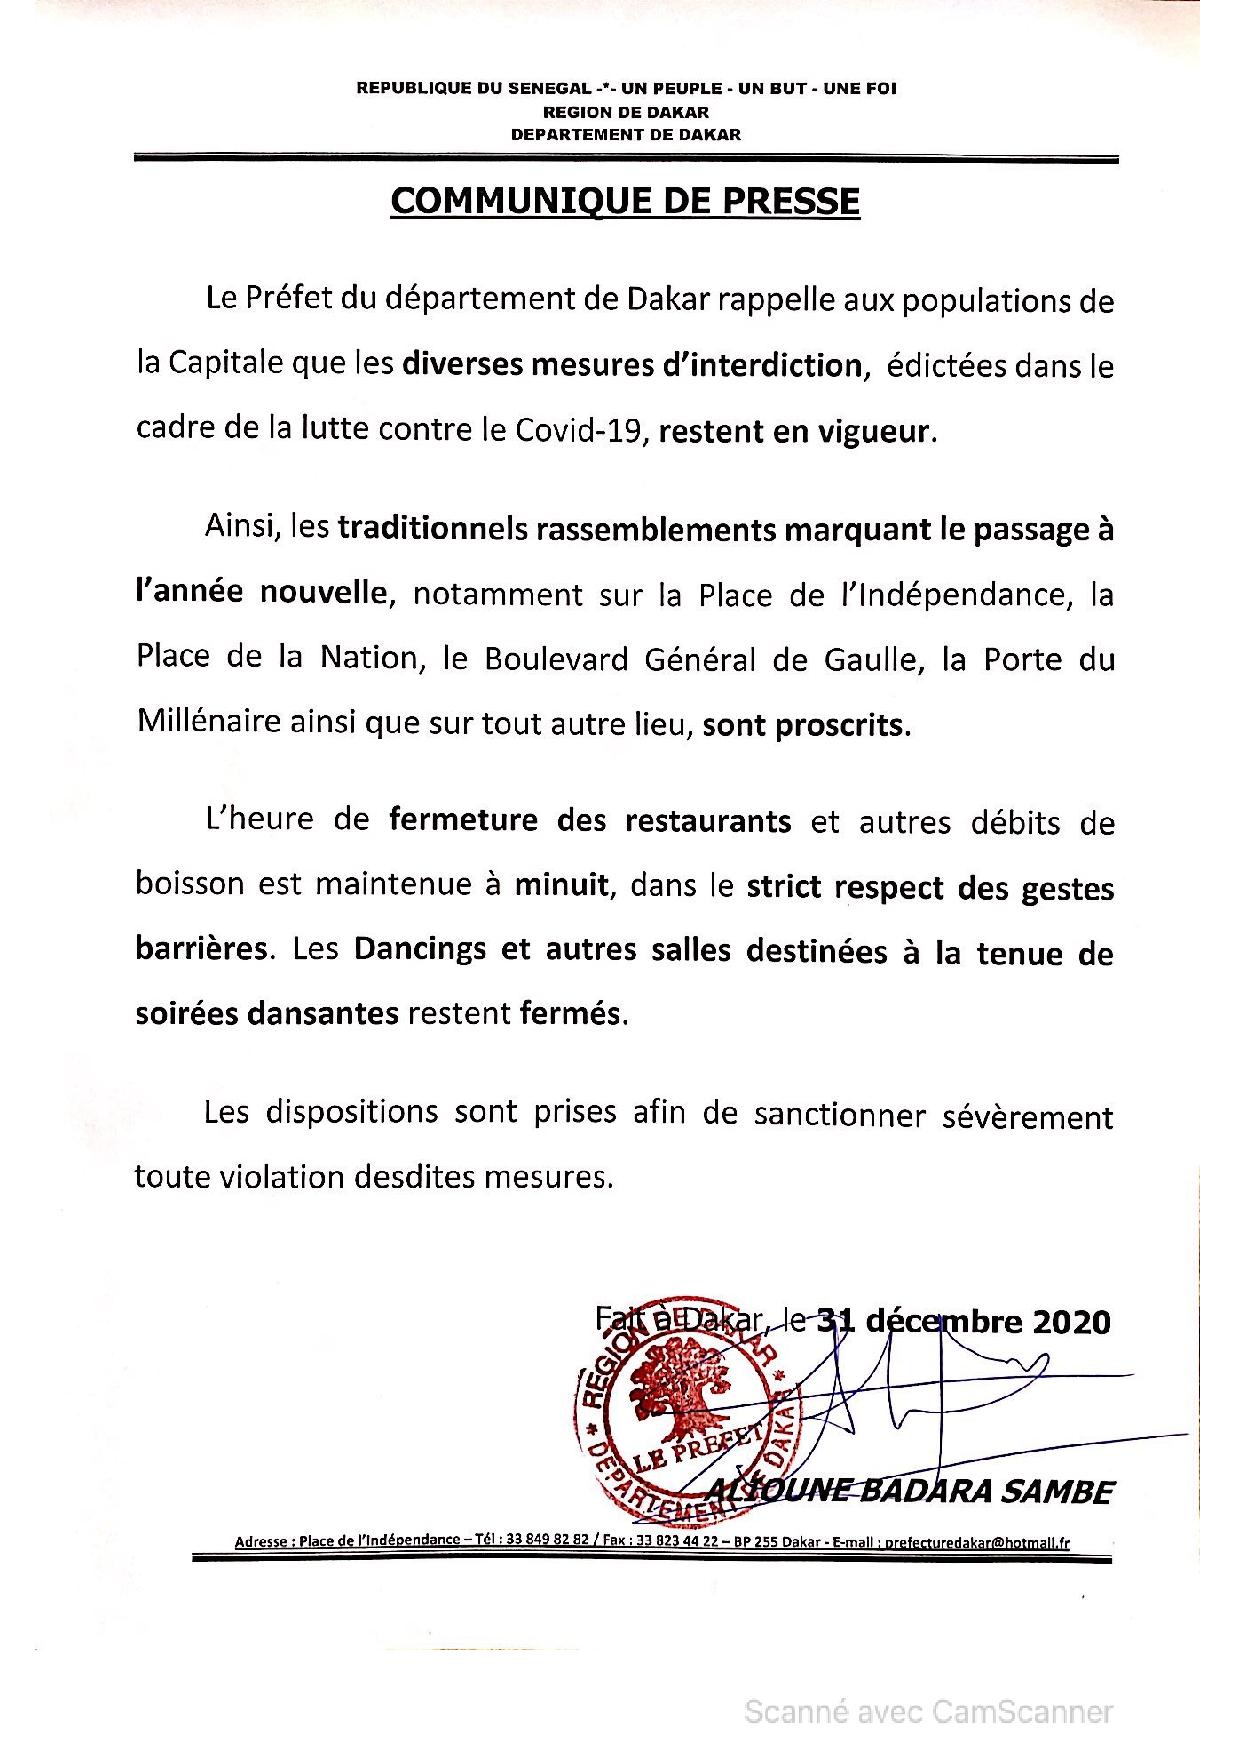 Le préfet de Dakar barricade Dakar...Pas de fête